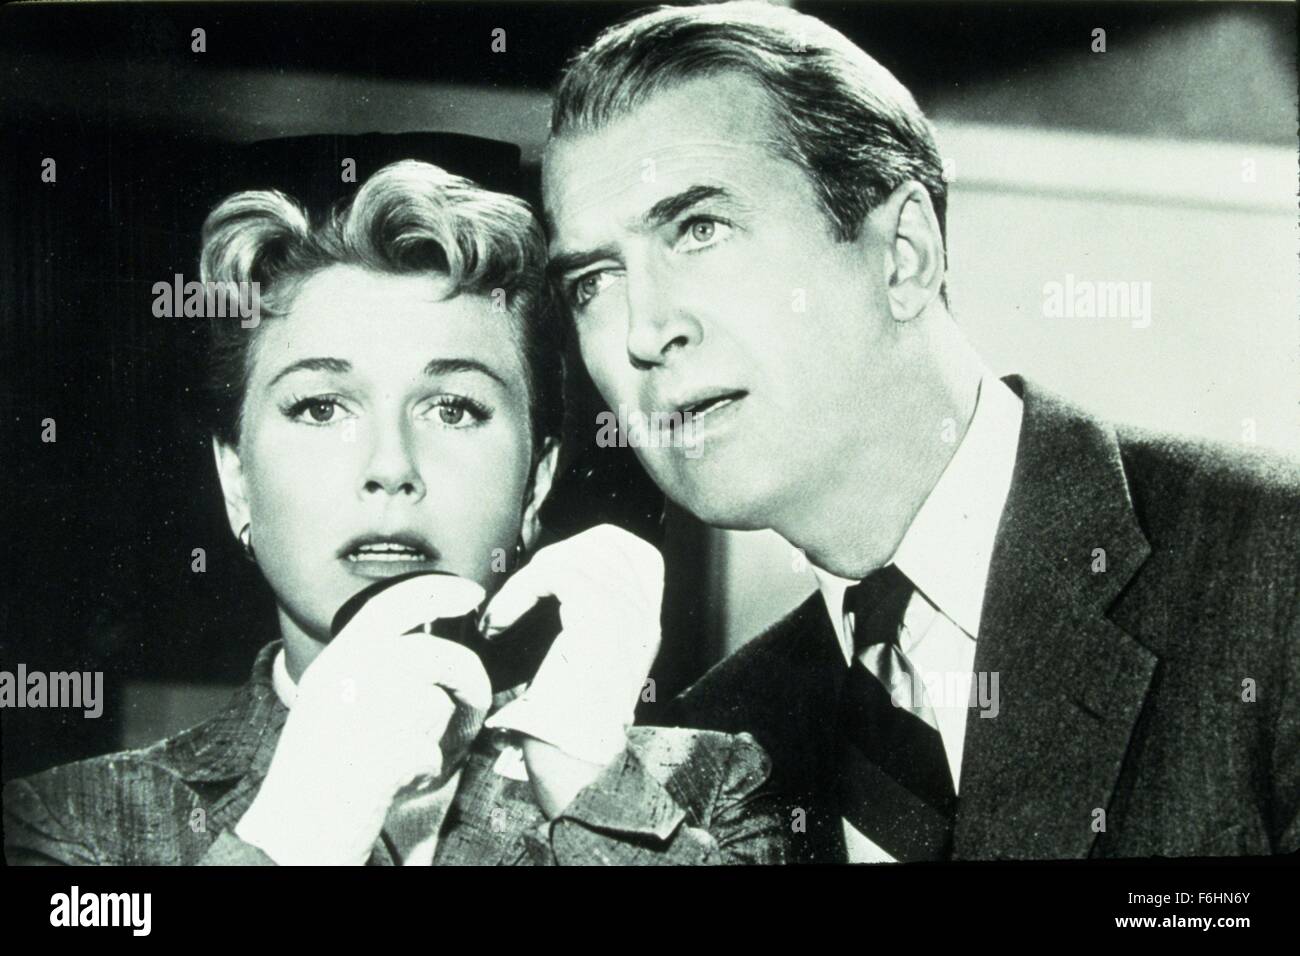 1956, Filmtitel: MAN WHO TOO MUCH, Regie knew: ALFRED HITCHCOCK, Studio: PARAMOUNT, im Bild: JAMES STEWART, DORIS DAY, ALFRED HITCHCOCK. (Bild Kredit: SNAP) Stockfoto